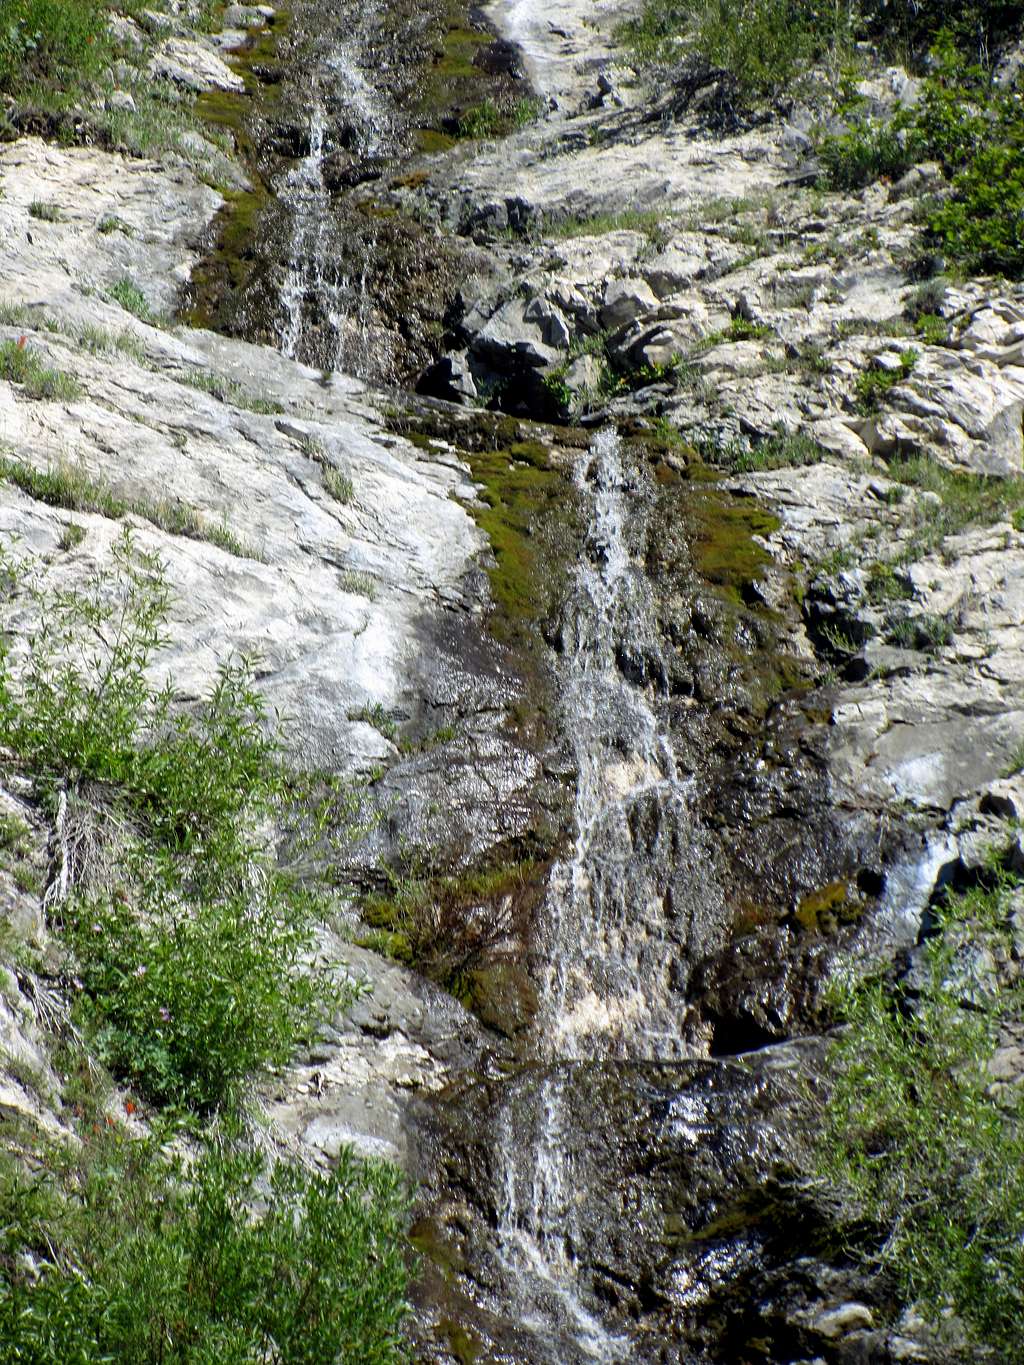 Deer Creek Waterfall